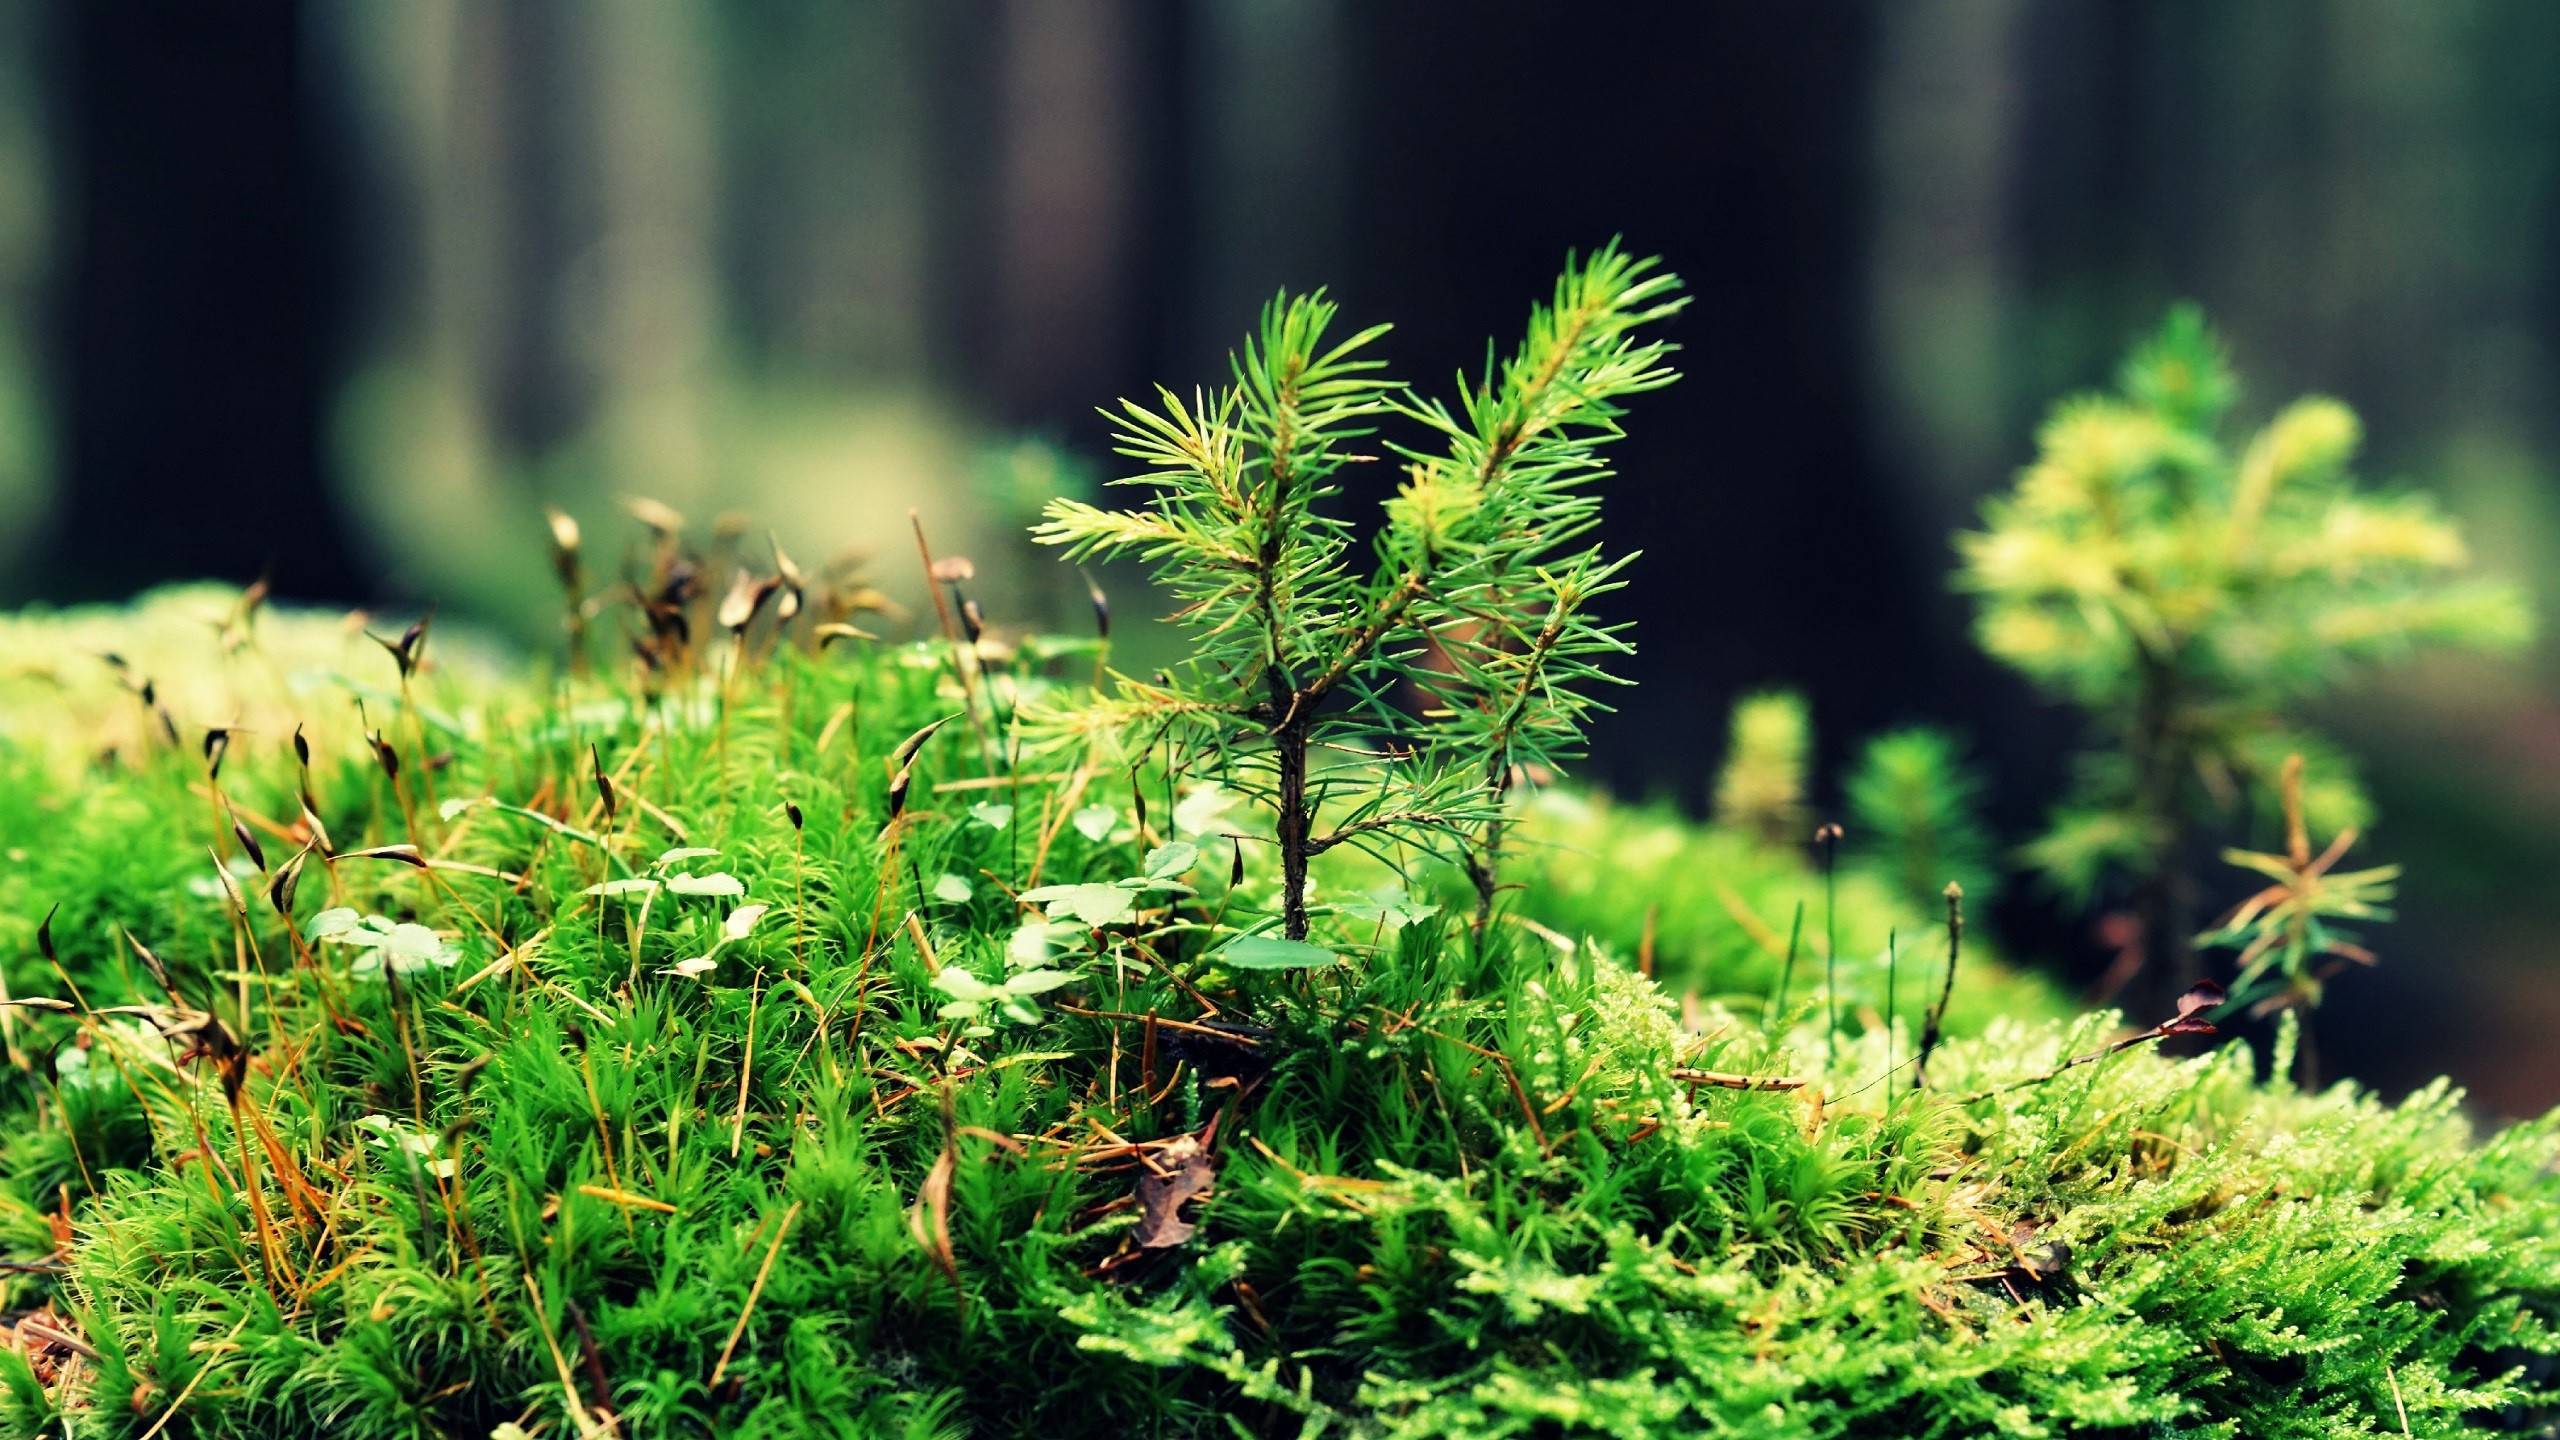 Бесплатное фото Зеленый мох с пихтовыми веточками